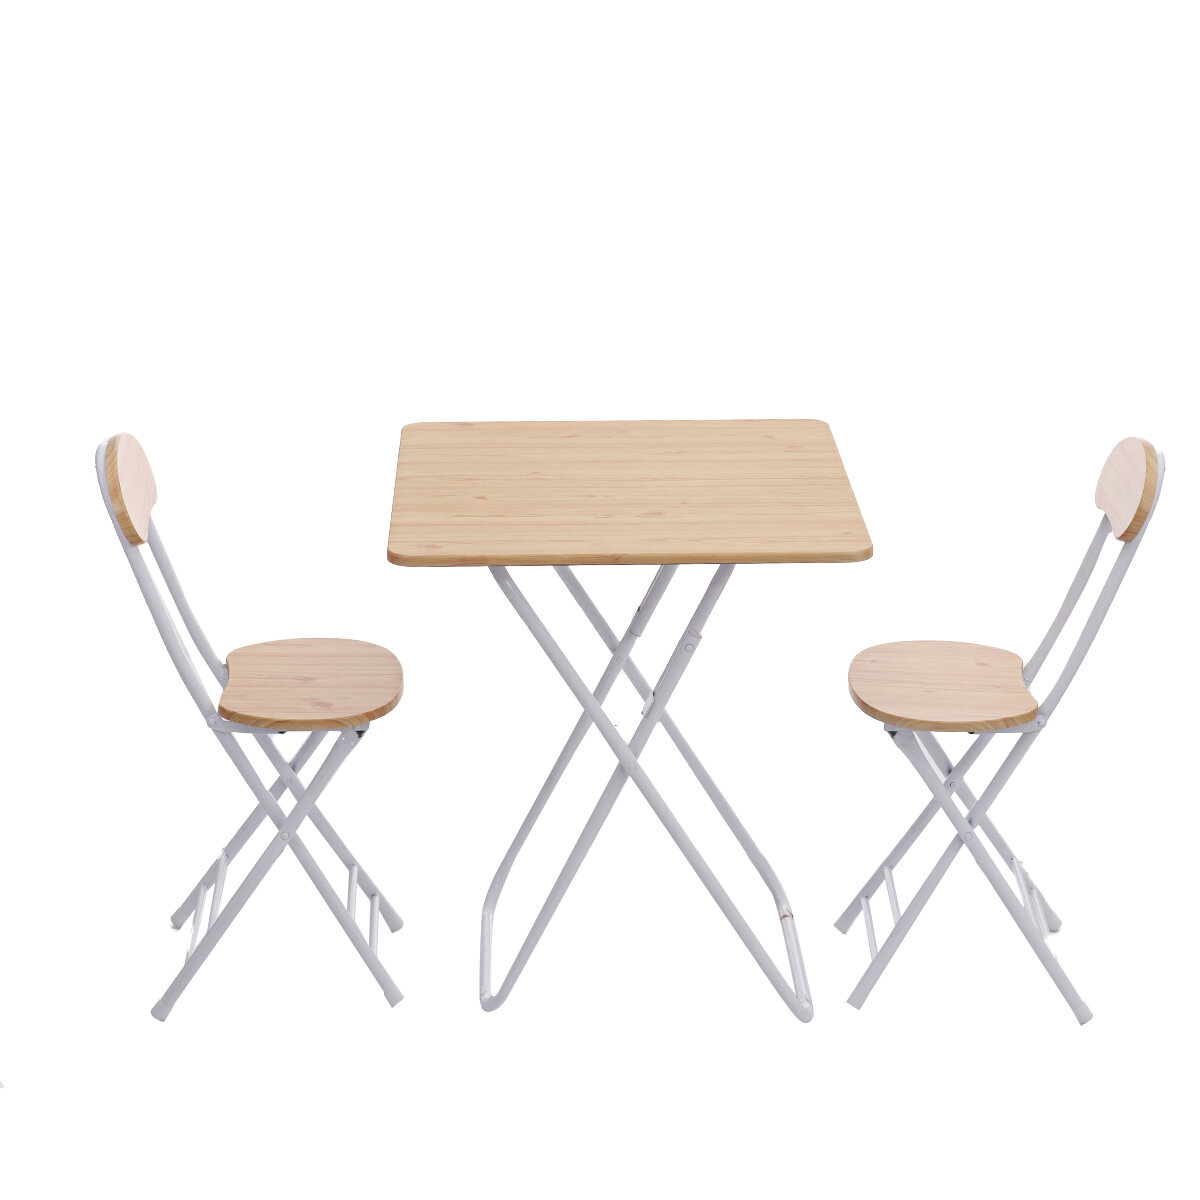 árom összecsukható asztal és szék készlet, négyzet alakú és hordozható, kültéri étkezéshez, kempingezéshez vagy piknikhez.